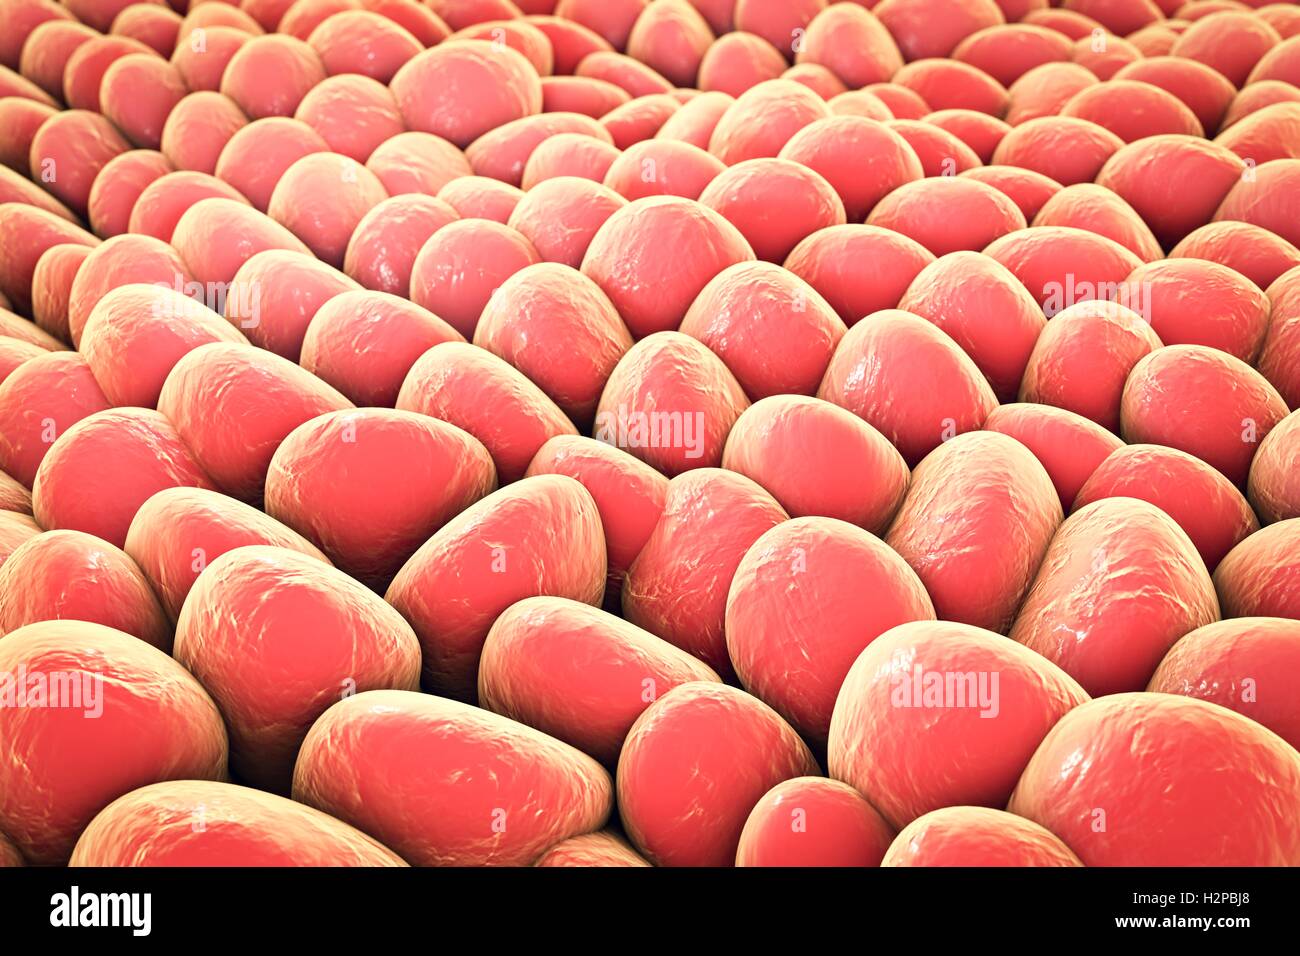 Monolage menschlicher Zellen. Computer Bild, die verwendet werden kann, um Labor Gewebekulturen, menschliche Haut oder Schleimhaut Zellen zu veranschaulichen. Stockfoto